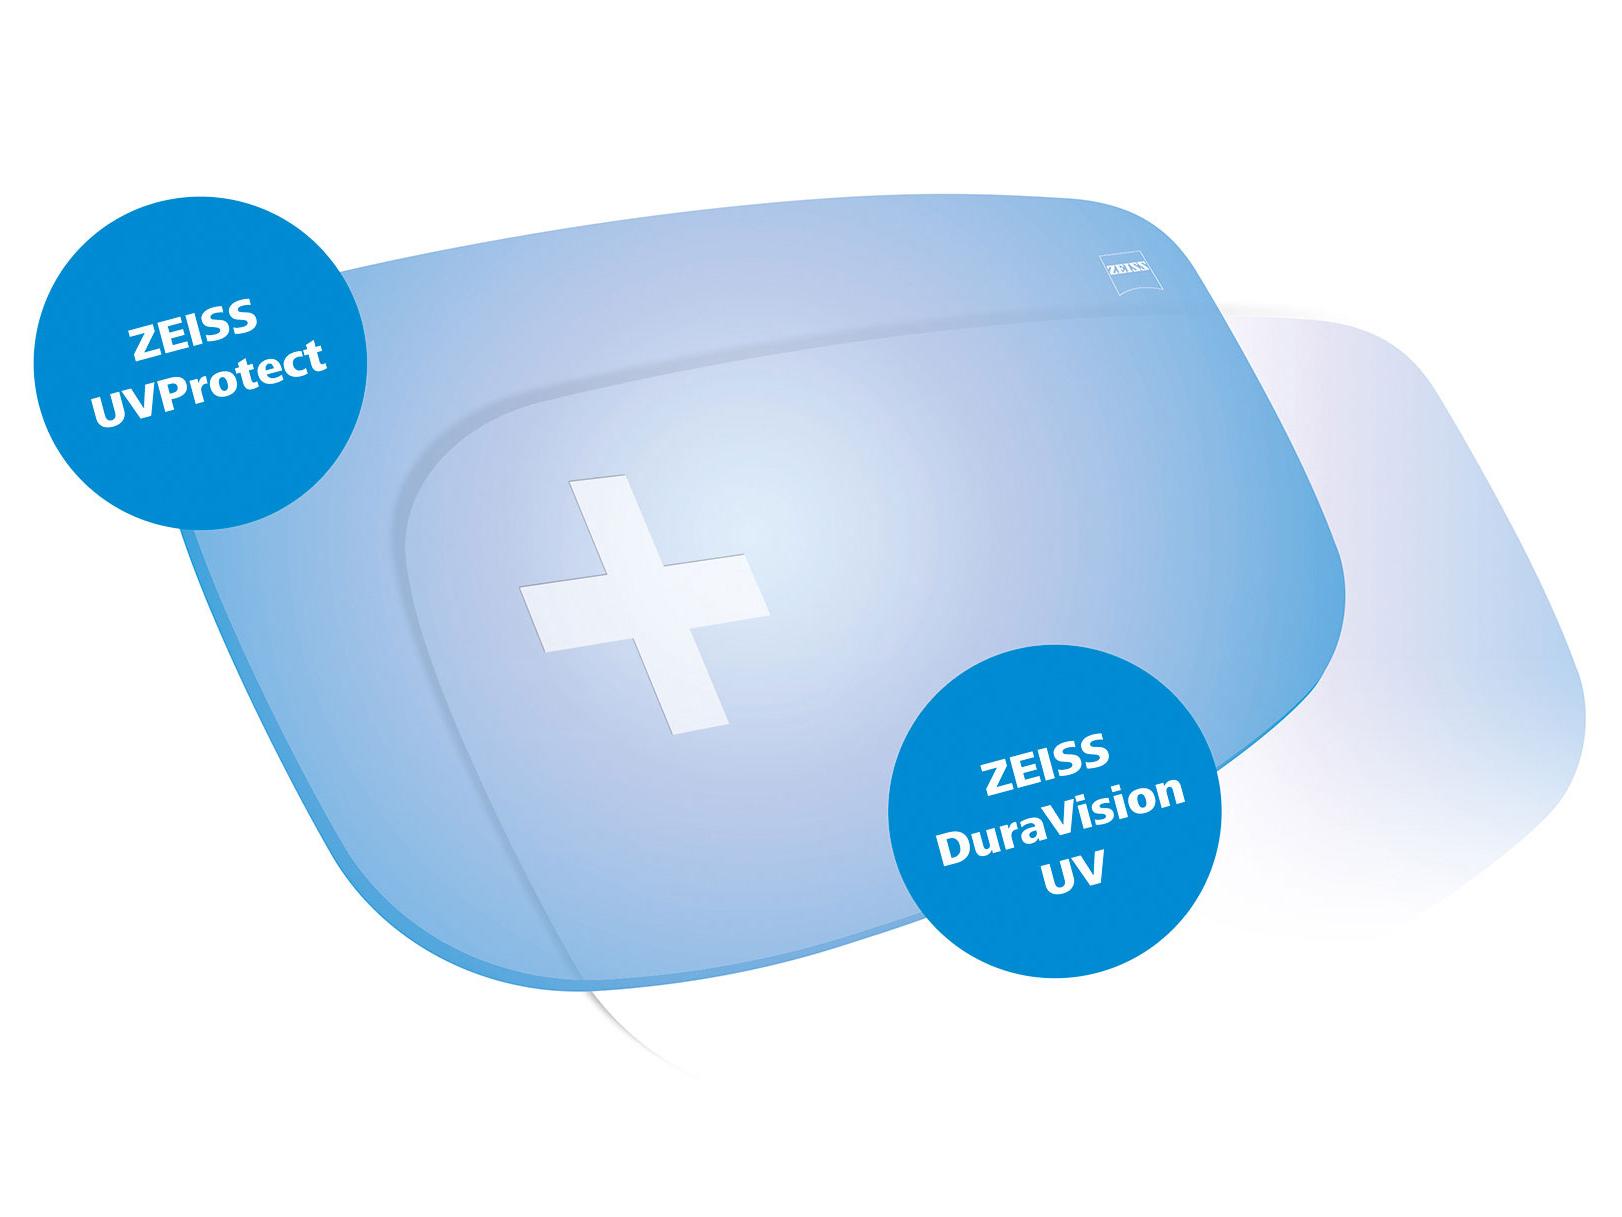 Tüm ZEISS gözlük camları standart olarak her yönden UV korumasıyla gelir. Grafik iki çözümü göstermektedir.